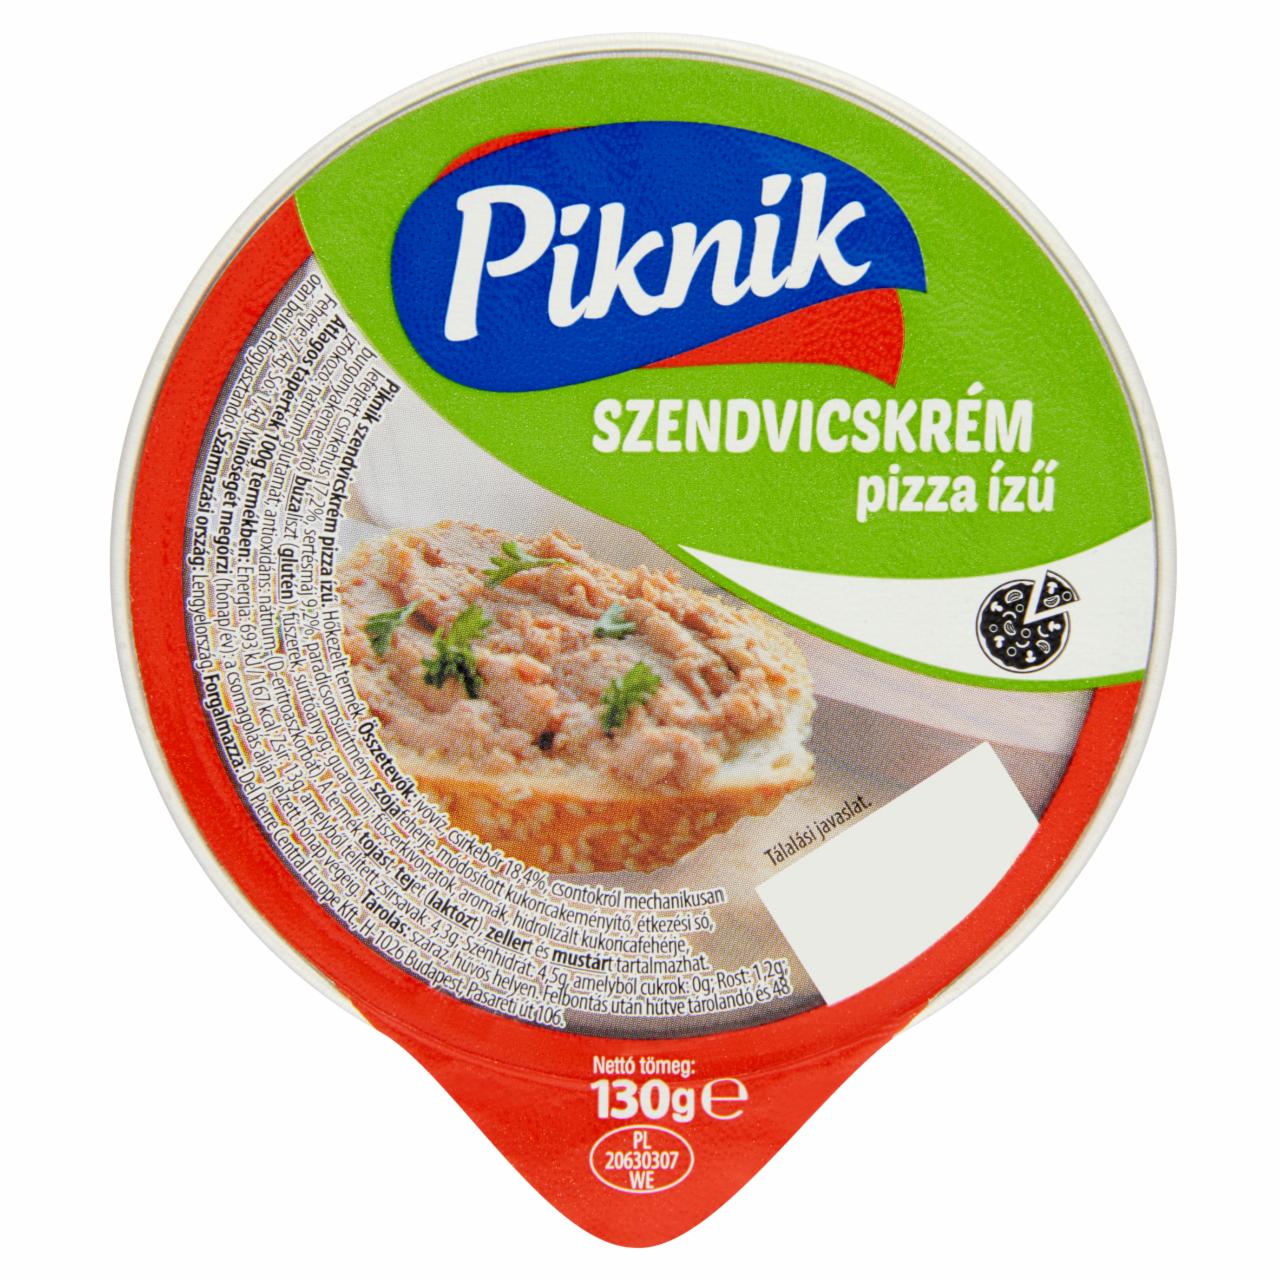 Képek - Piknik pizza ízű szendvicskrém 130 g